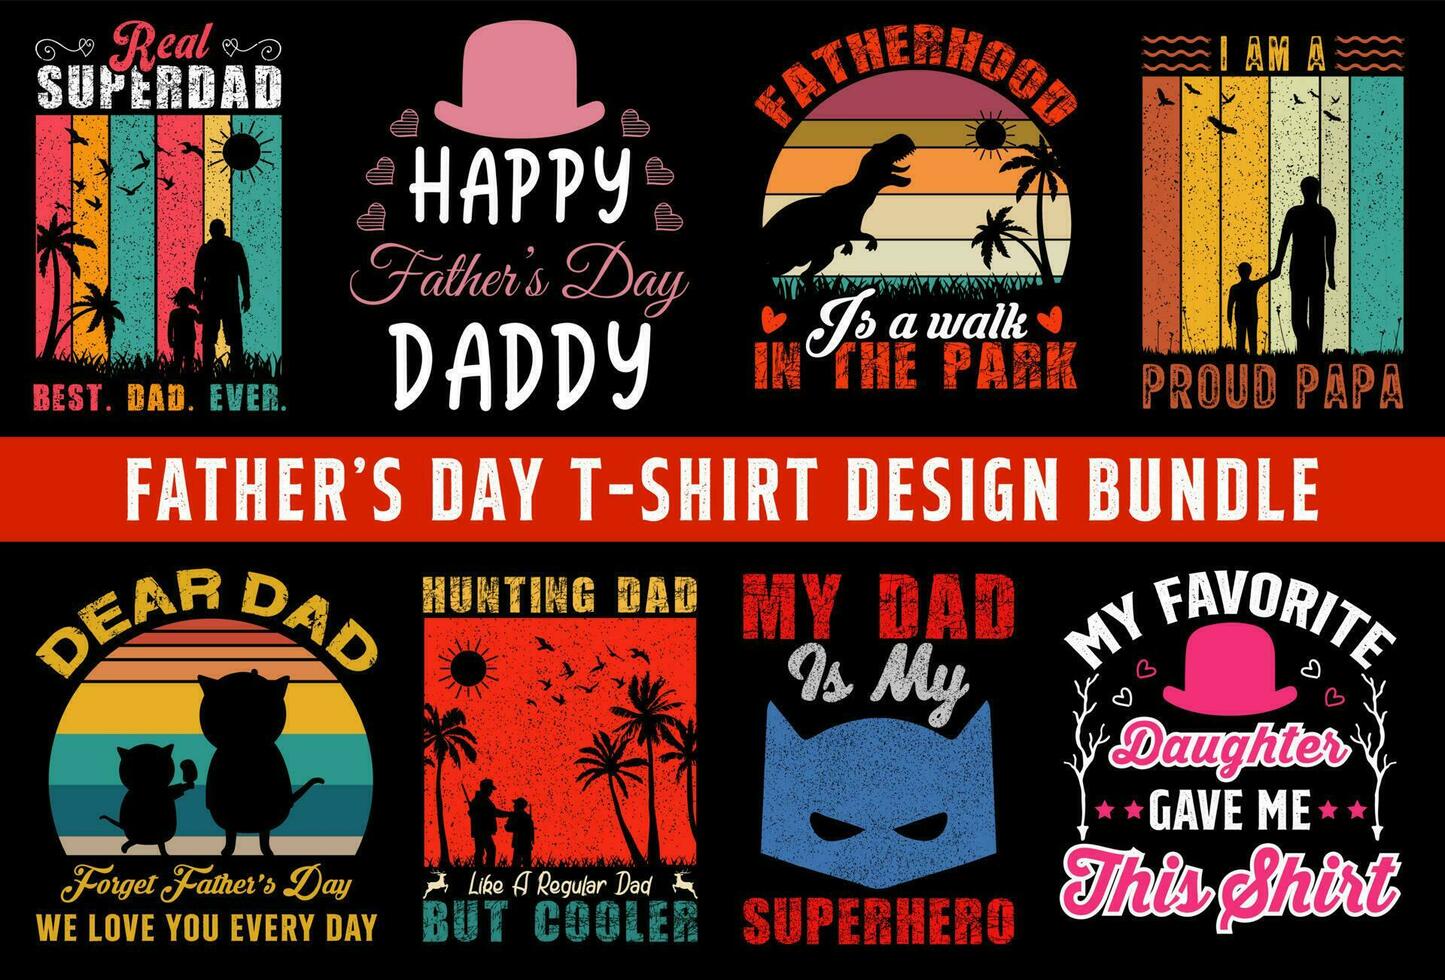 Vector dad t shirt design, step dad t shirt design, best dad ever t shirt design bundle